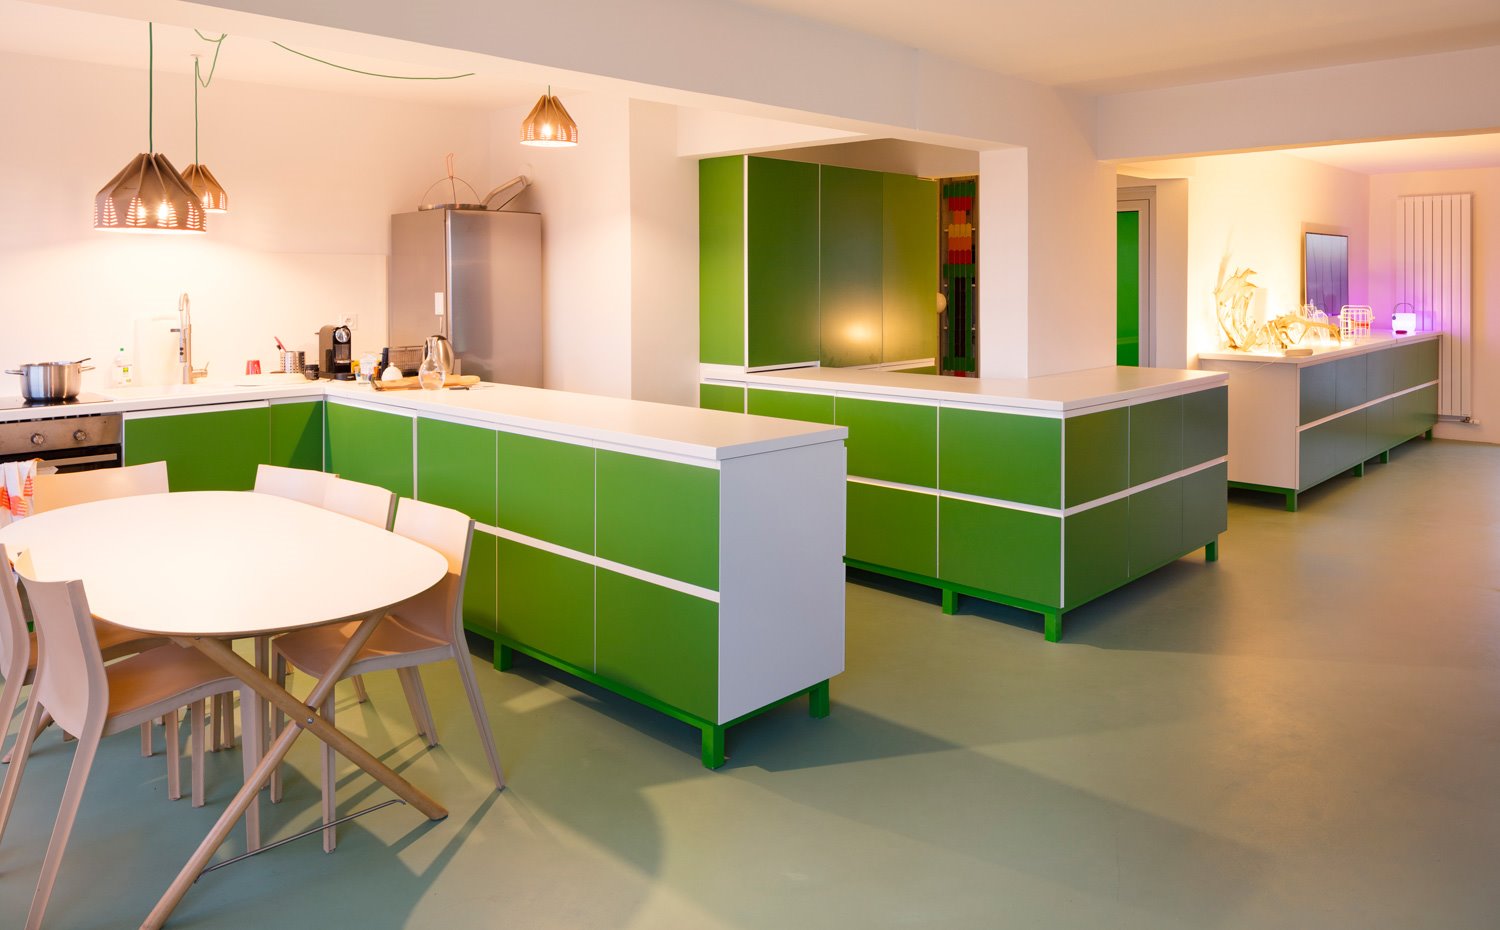 Comedor con sillas en beige y cocina con muebles bajos en verde dispuesto en forma de L, armarios en pared verdes